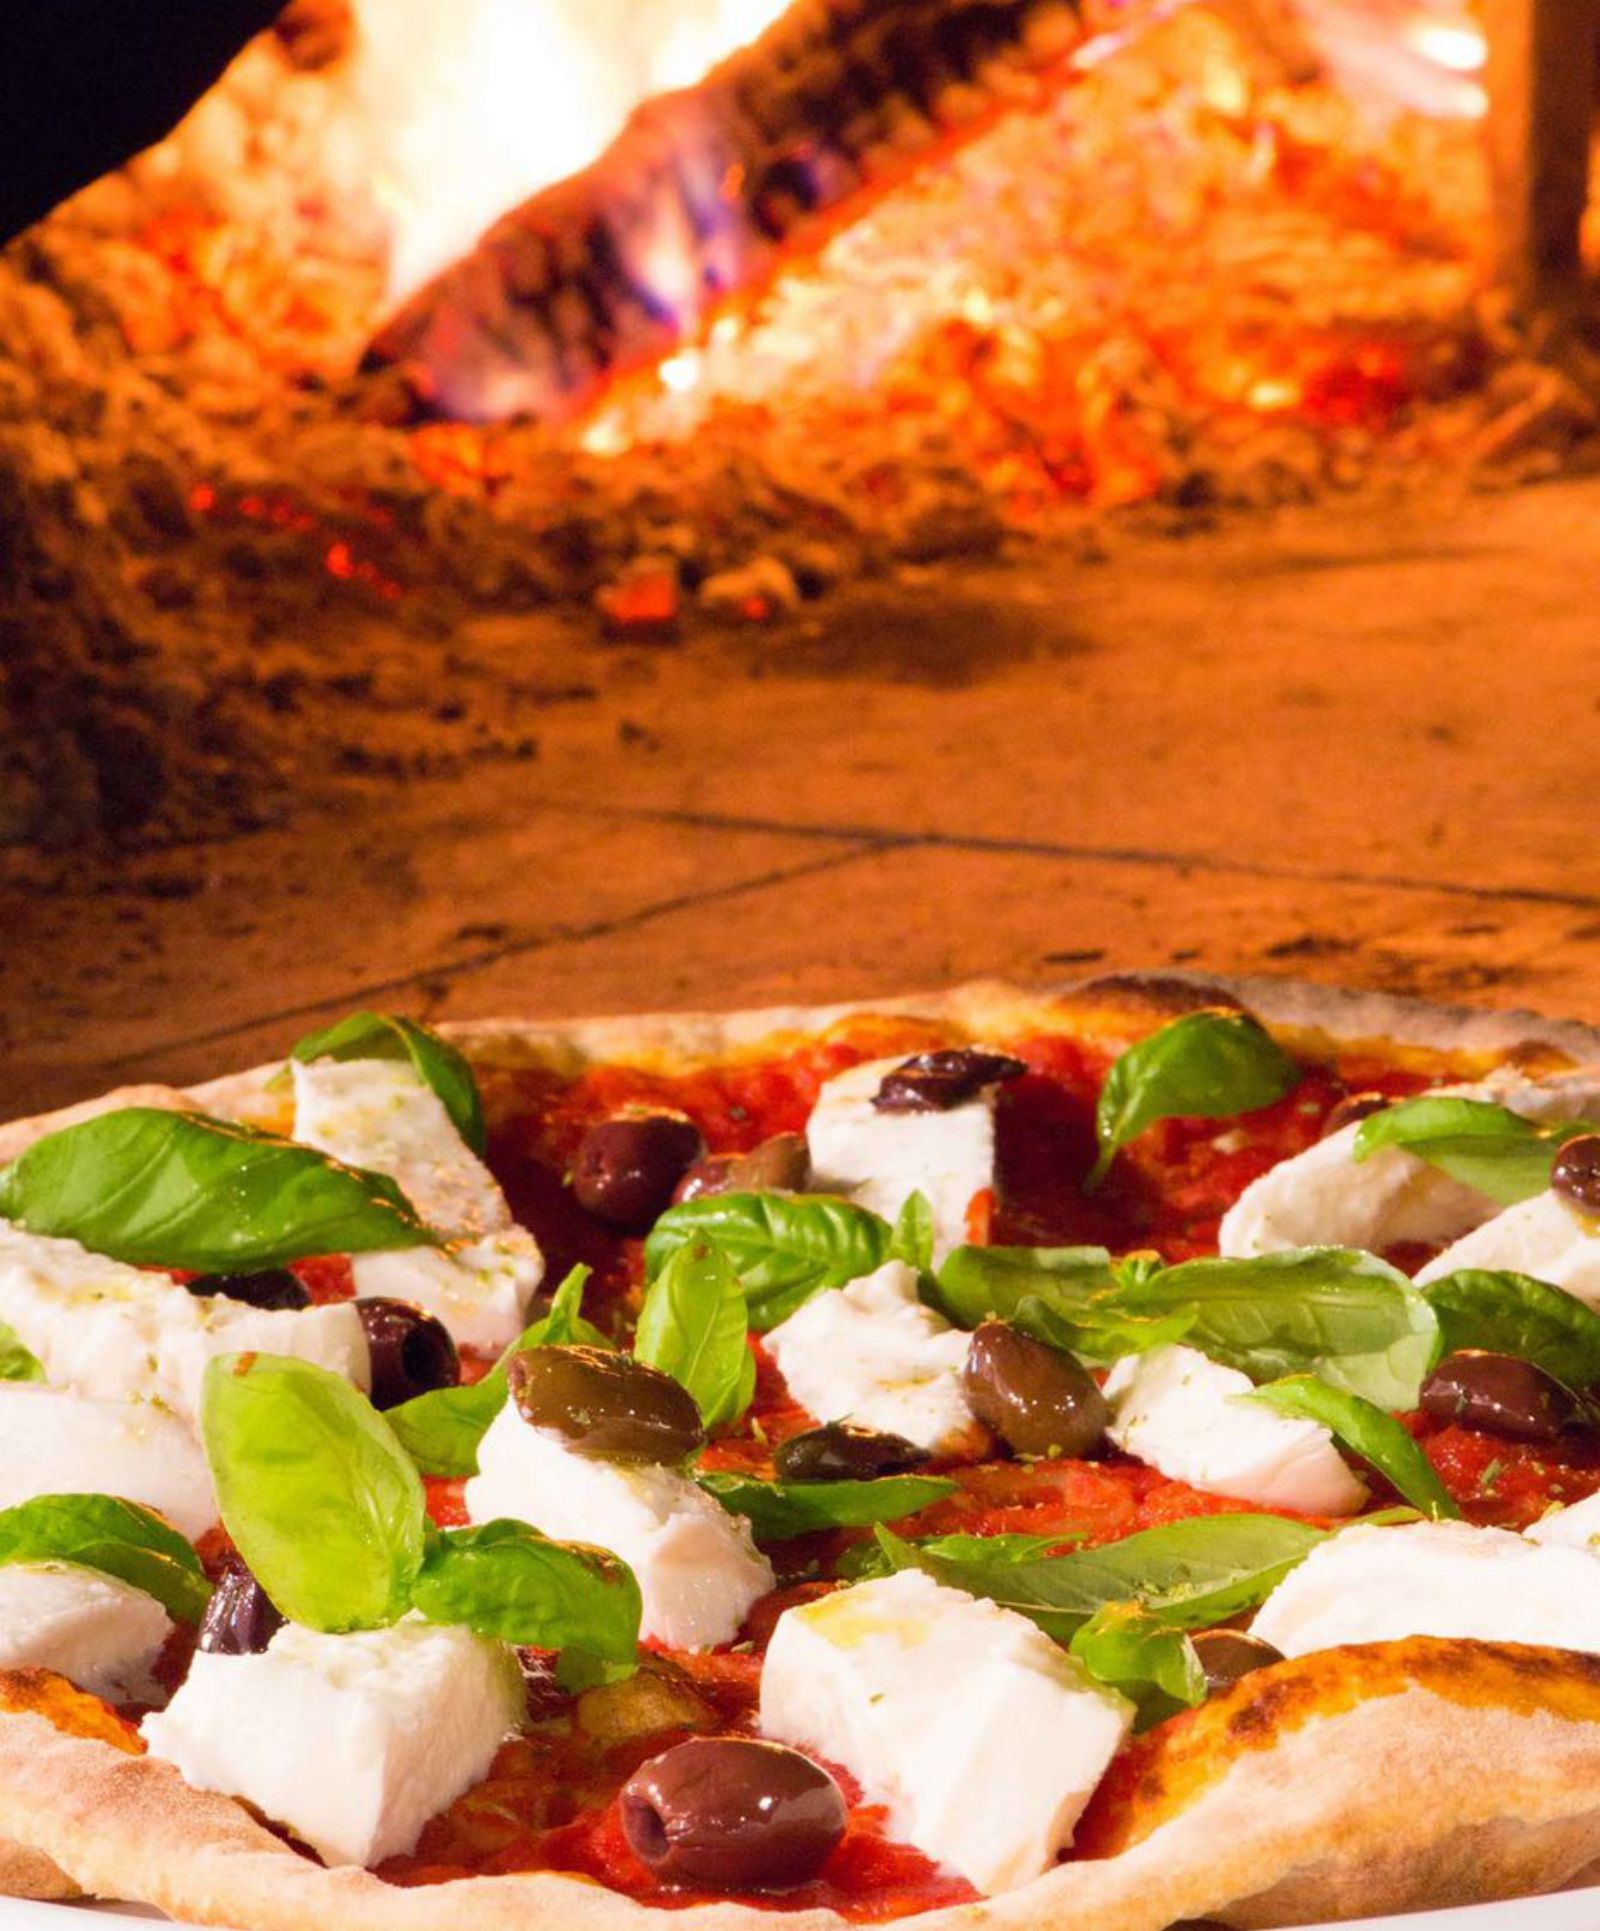 Las pizzas son el plato estrella de Le Specialità.